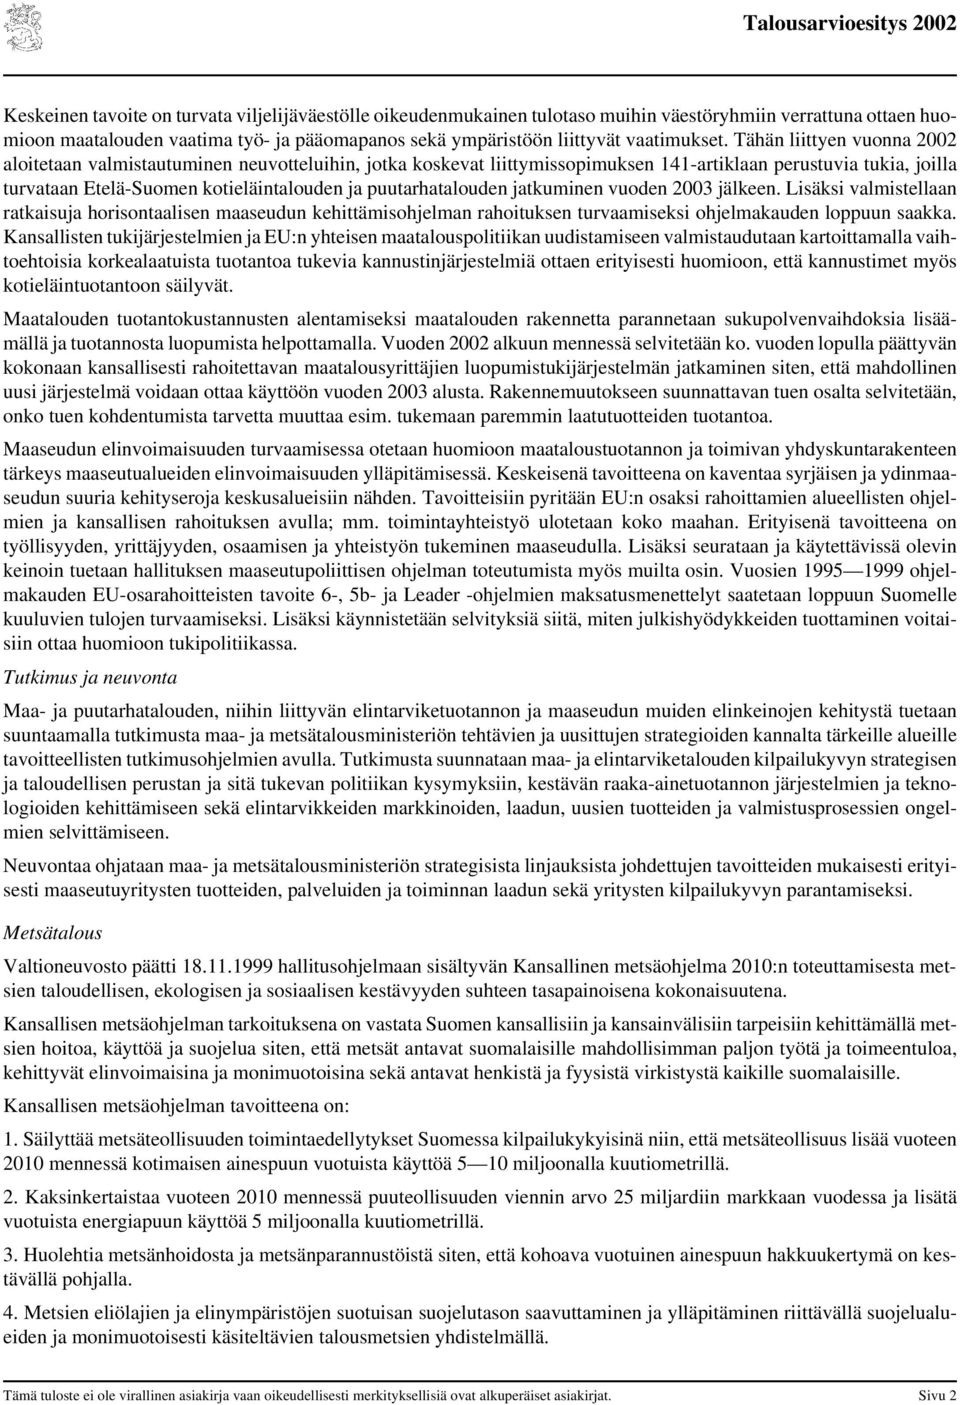 Tähän liittyen vuonna 2002 aloitetaan valmistautuminen neuvotteluihin, jotka koskevat liittymissopimuksen 141-artiklaan perustuvia tukia, joilla turvataan Etelä-Suomen kotieläintalouden ja